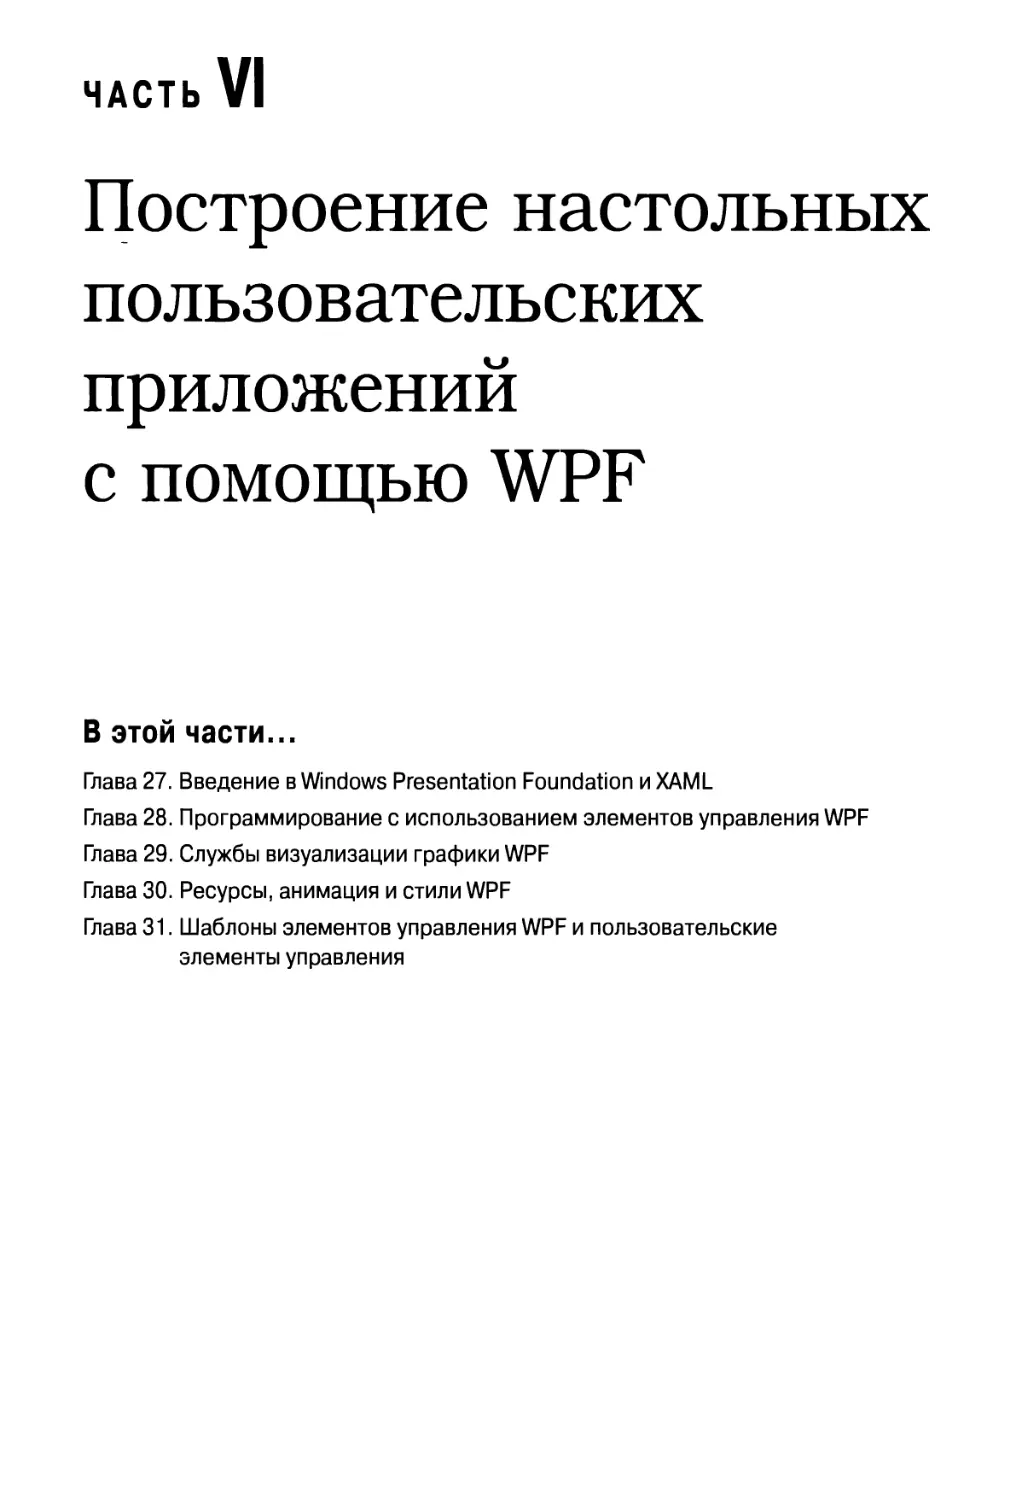 Часть VI. Построение настольных пользовательских приложений с помощью WPF